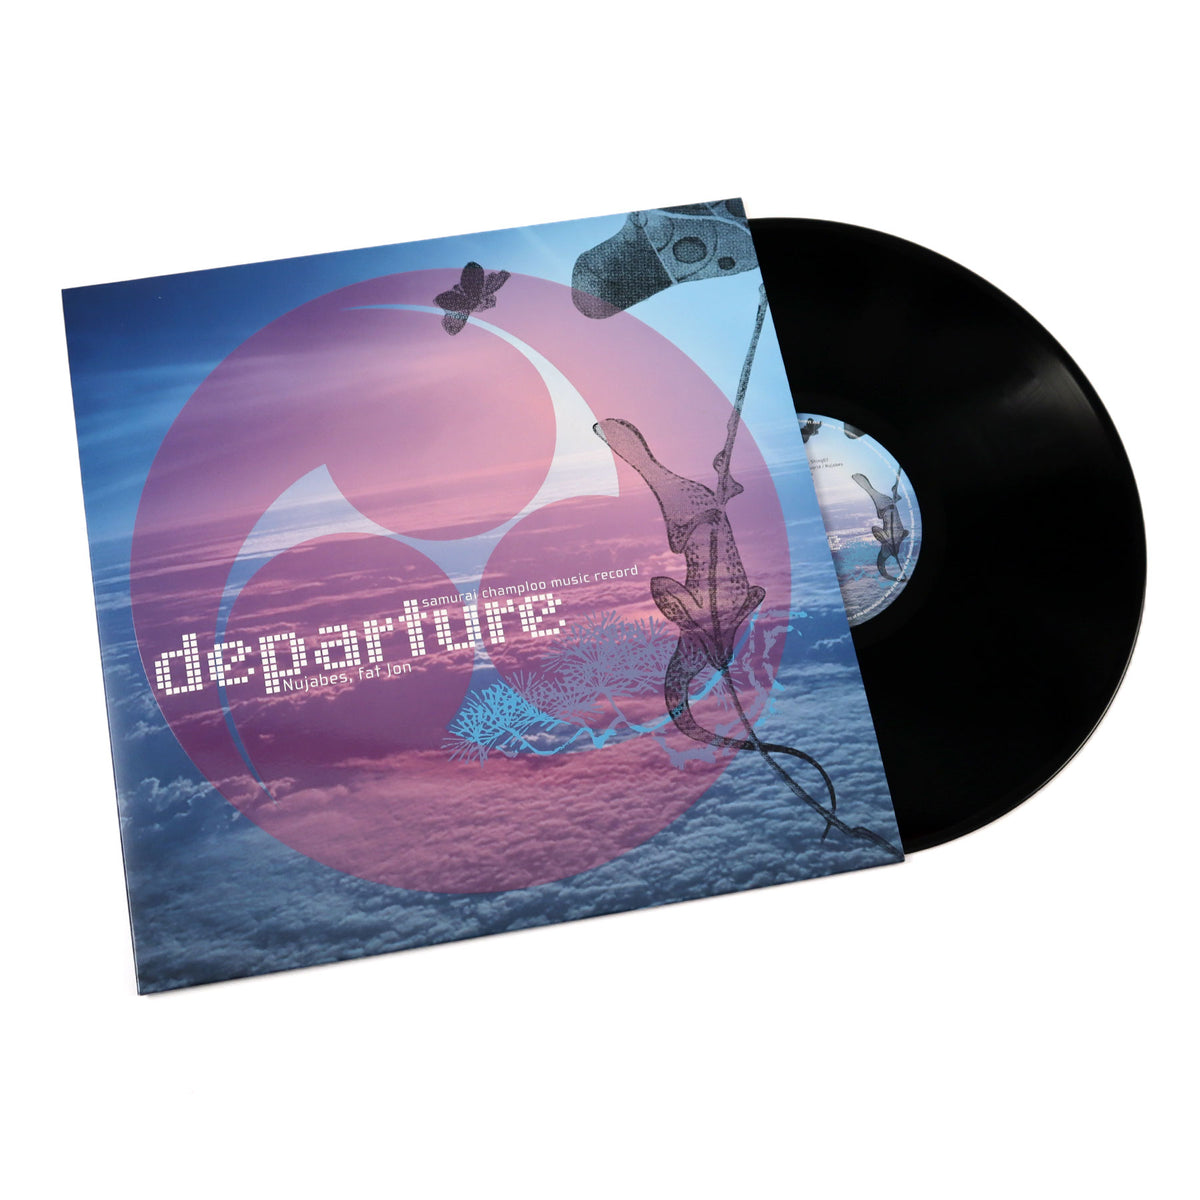 samurai champloo music record Departure | hartwellspremium.com